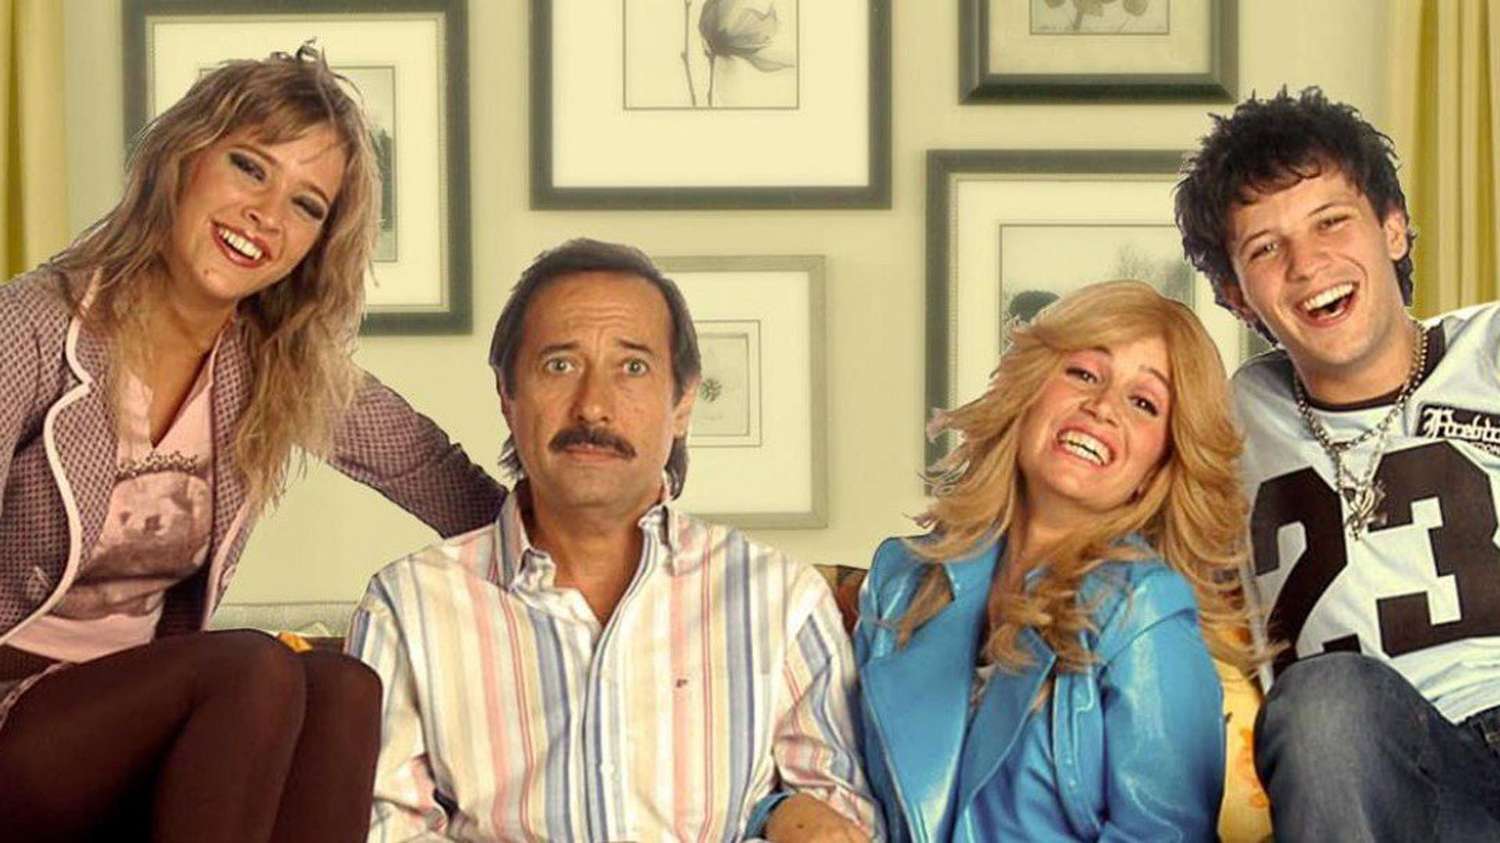 Con acidez, sarcasmo e ironía, la familia Argento de Pepe, Moni, Coqui y Paola explota en clave humorística las peleas y reproches familiares